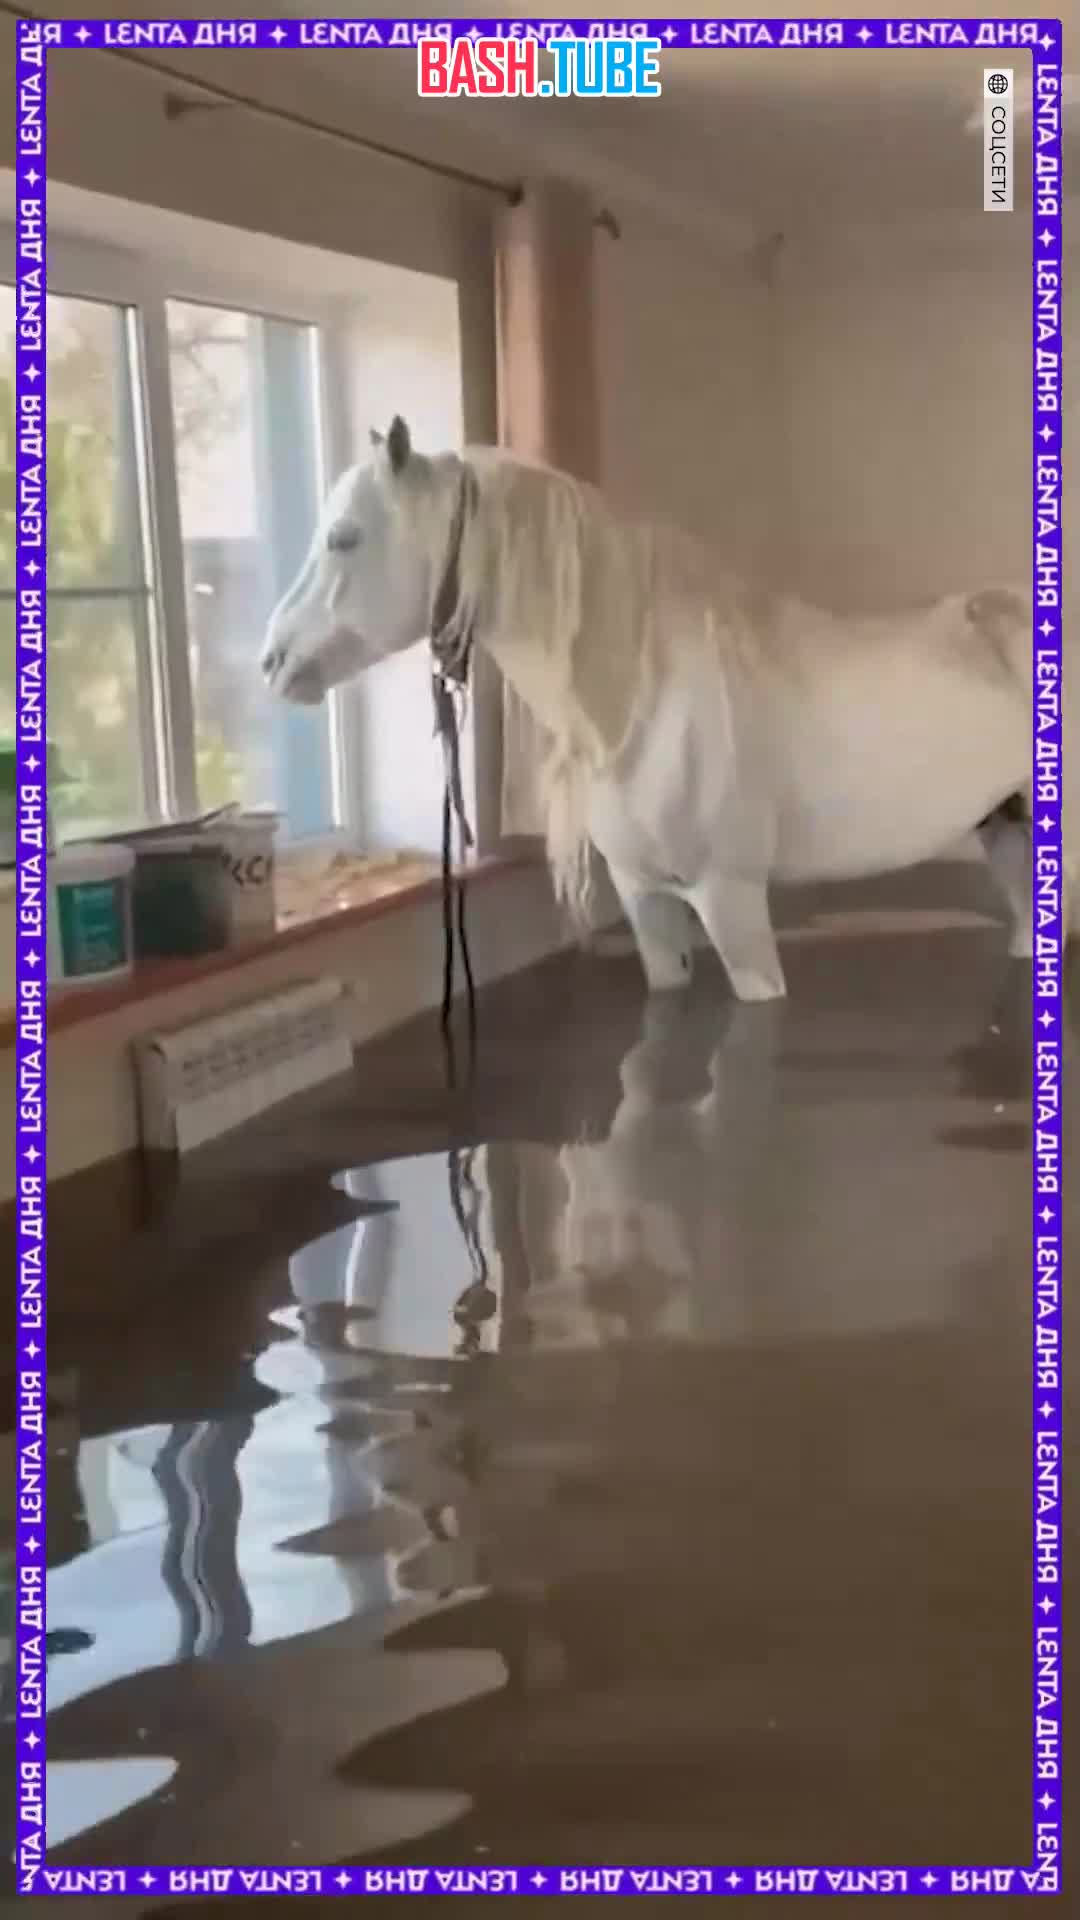  Самое чудное спасение этой недели: люди спустили лошадь из затопленного дома